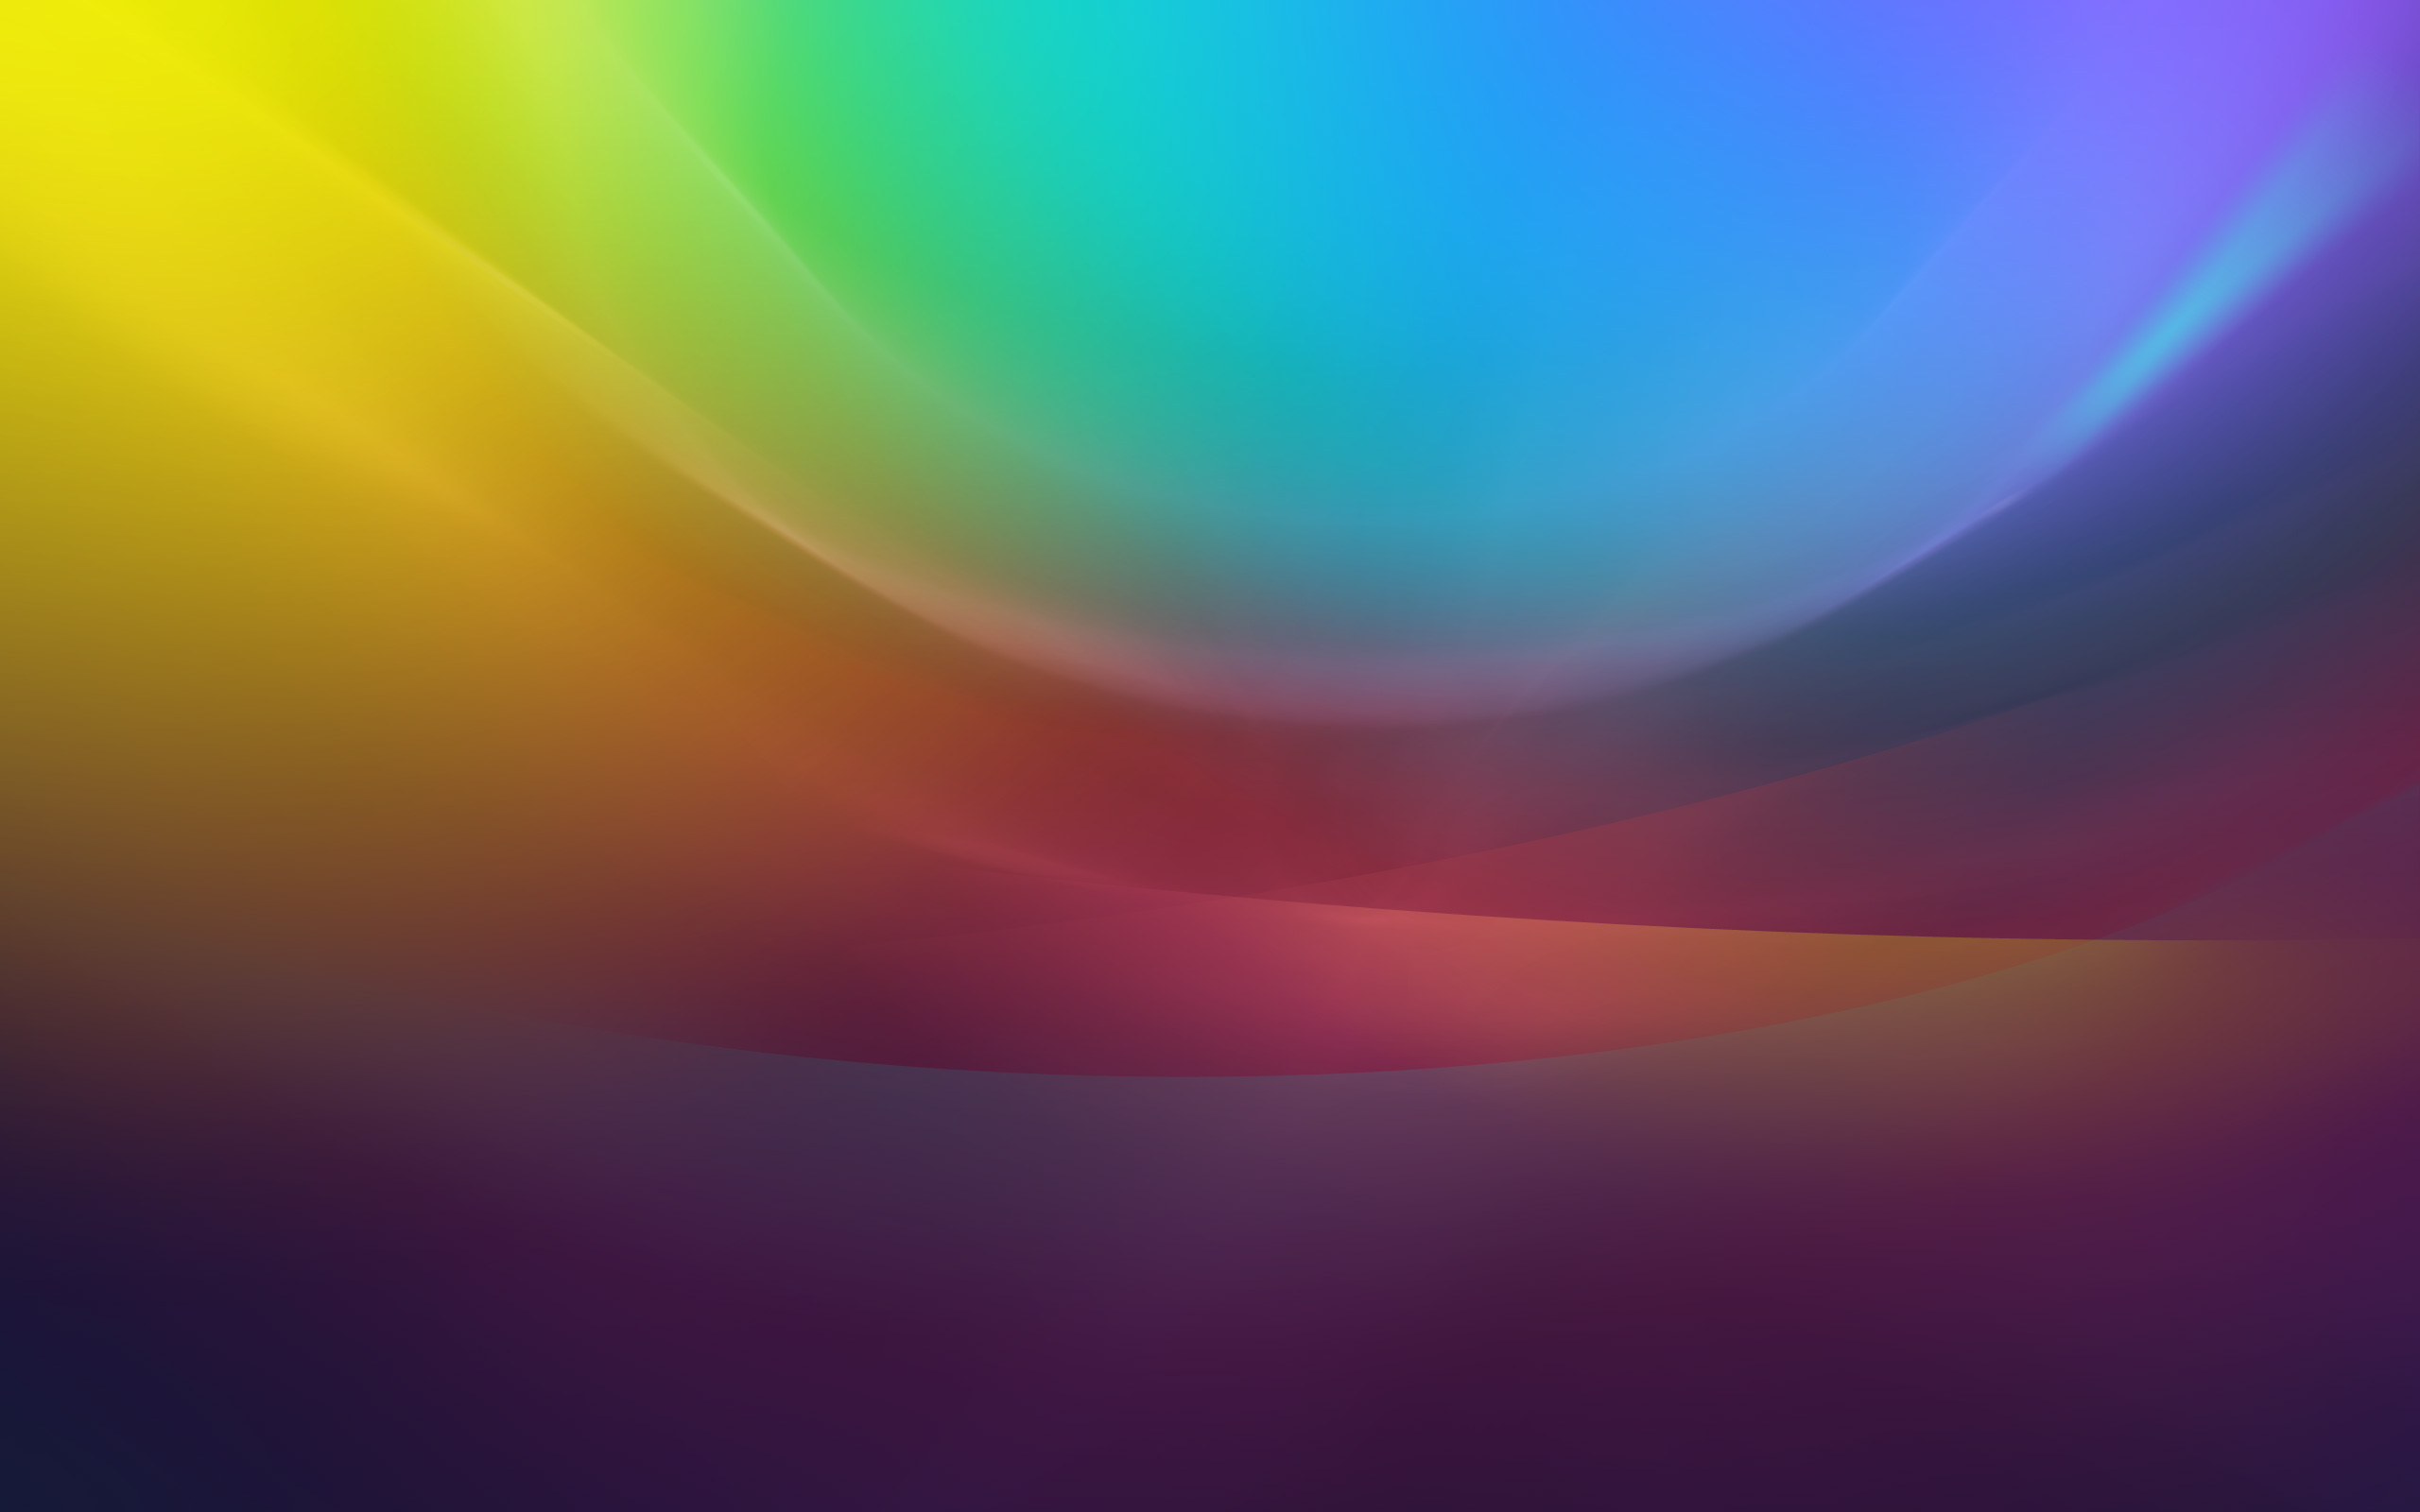 Colorful Waves145683183 - Colorful Waves - Waves, Stock, Colorful